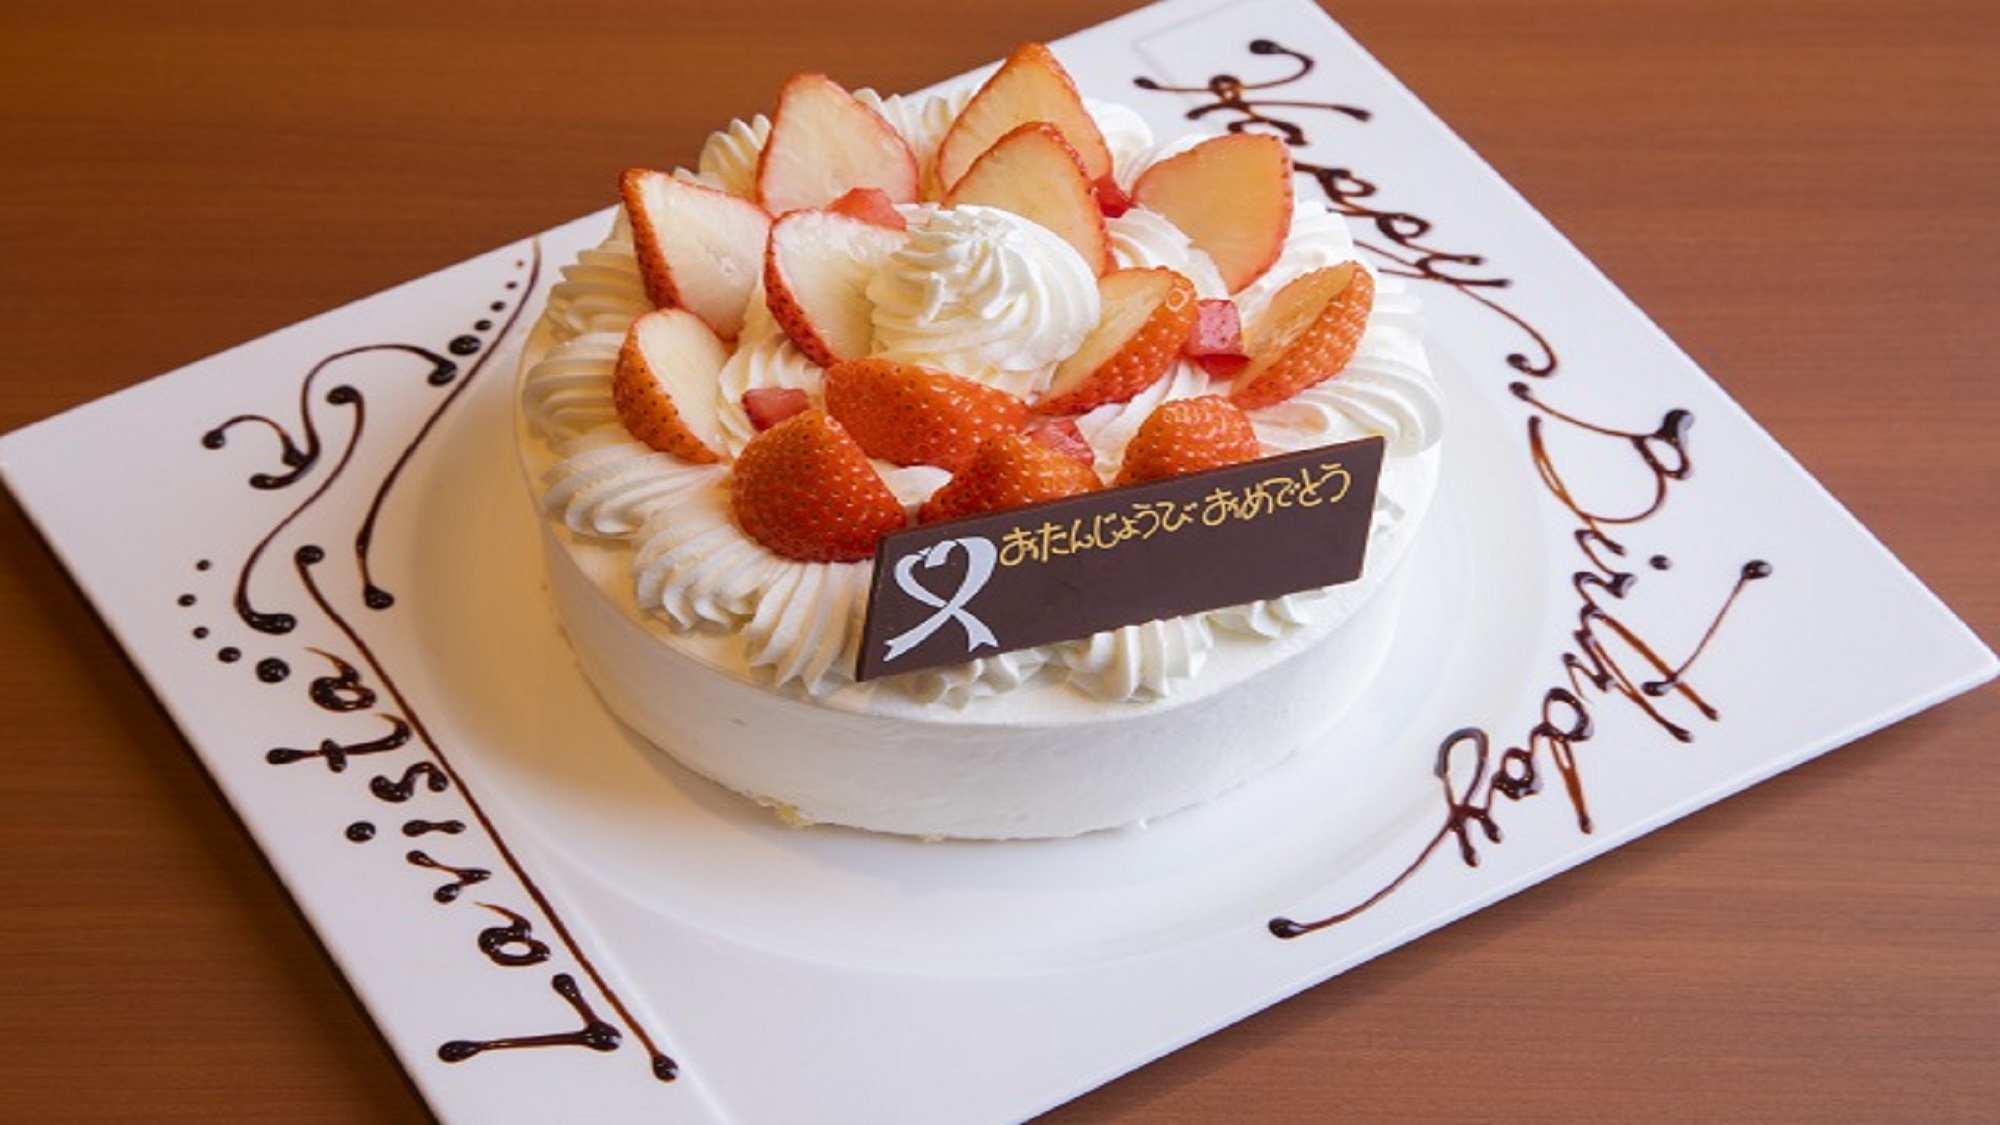 ■お誕生日や記念日に。デコレーションケーキをご用意(ご予約制)